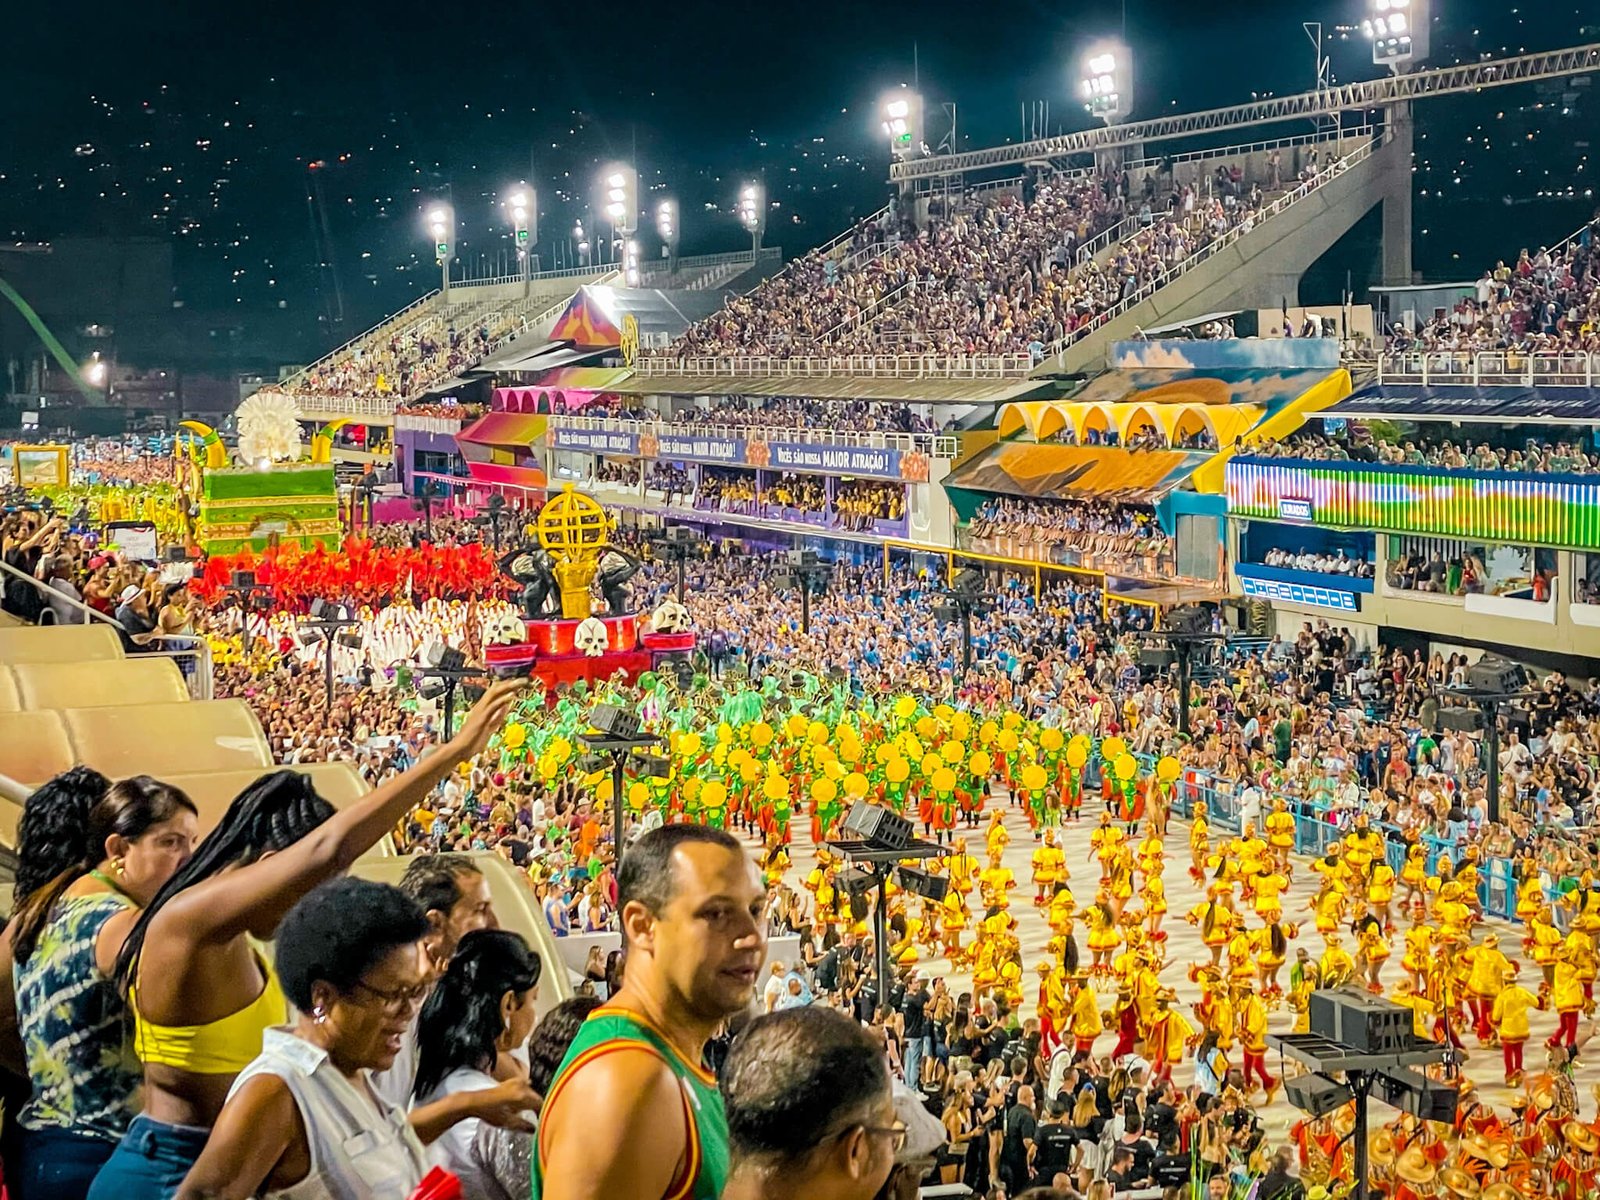 Sambadrome in Rio de Janeiro Carnival, the carnival in Brazil